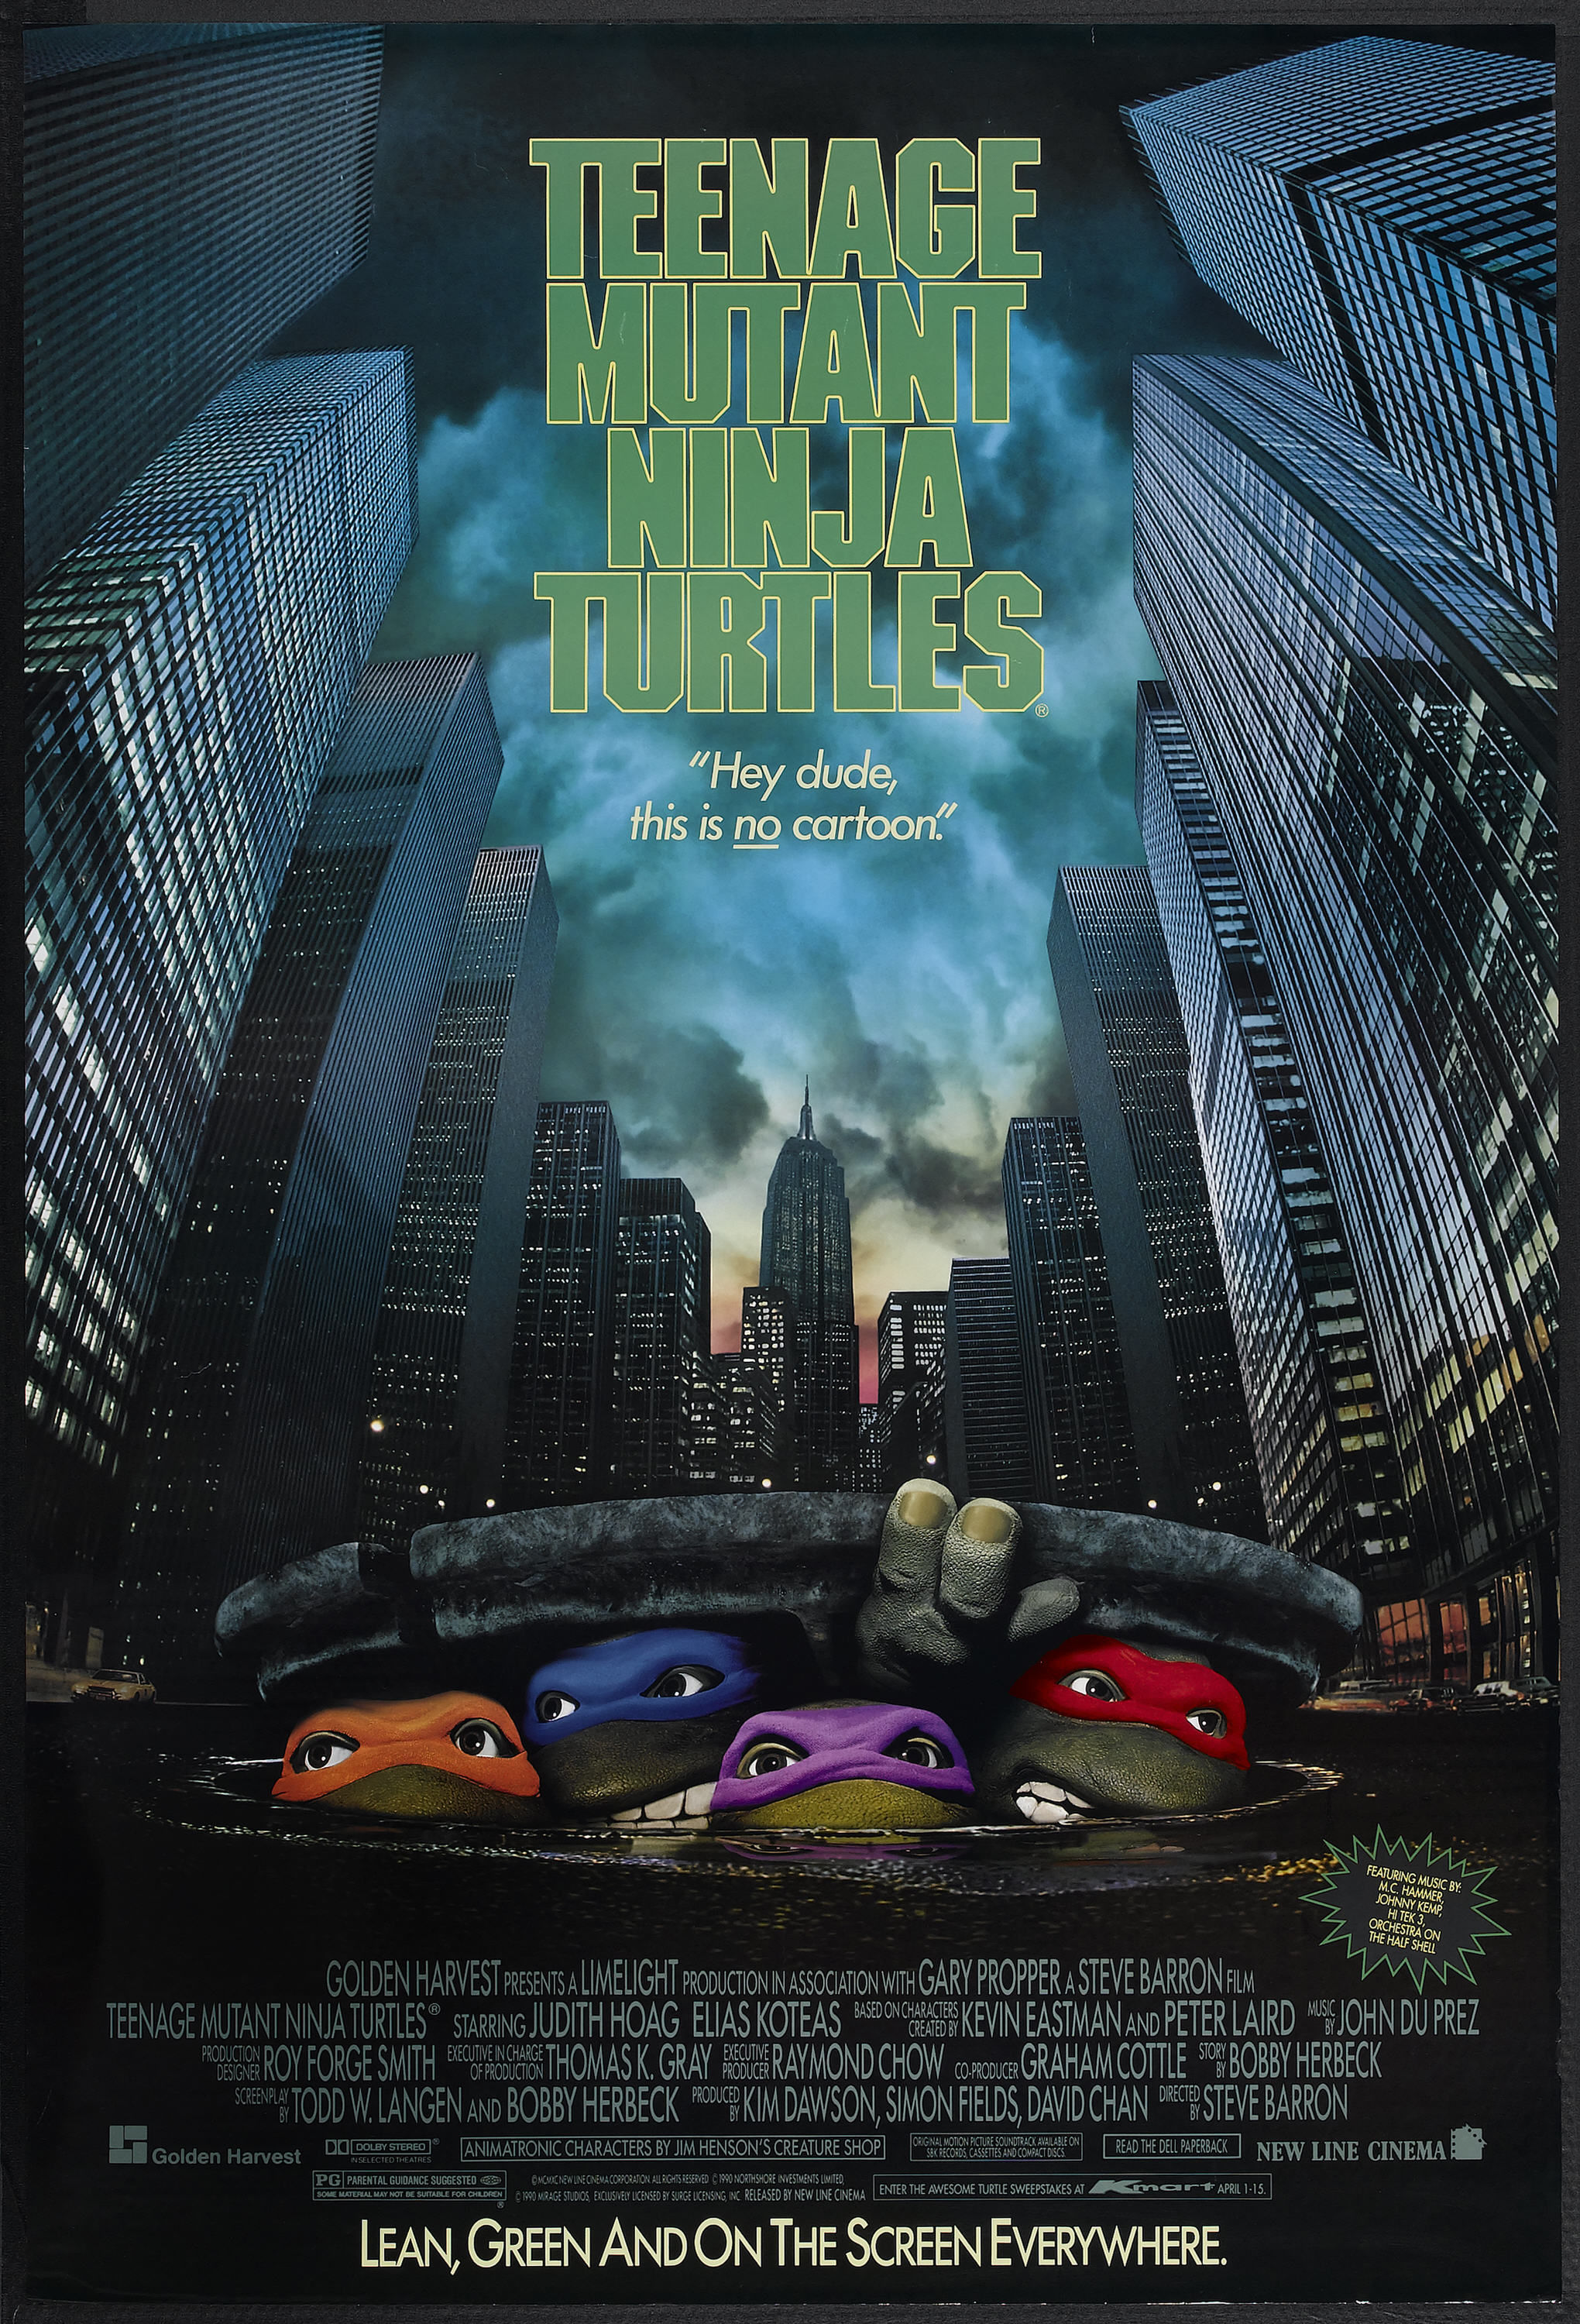 Teenage Mutant Ninja Turtles, movie posters - desktop wallpaper